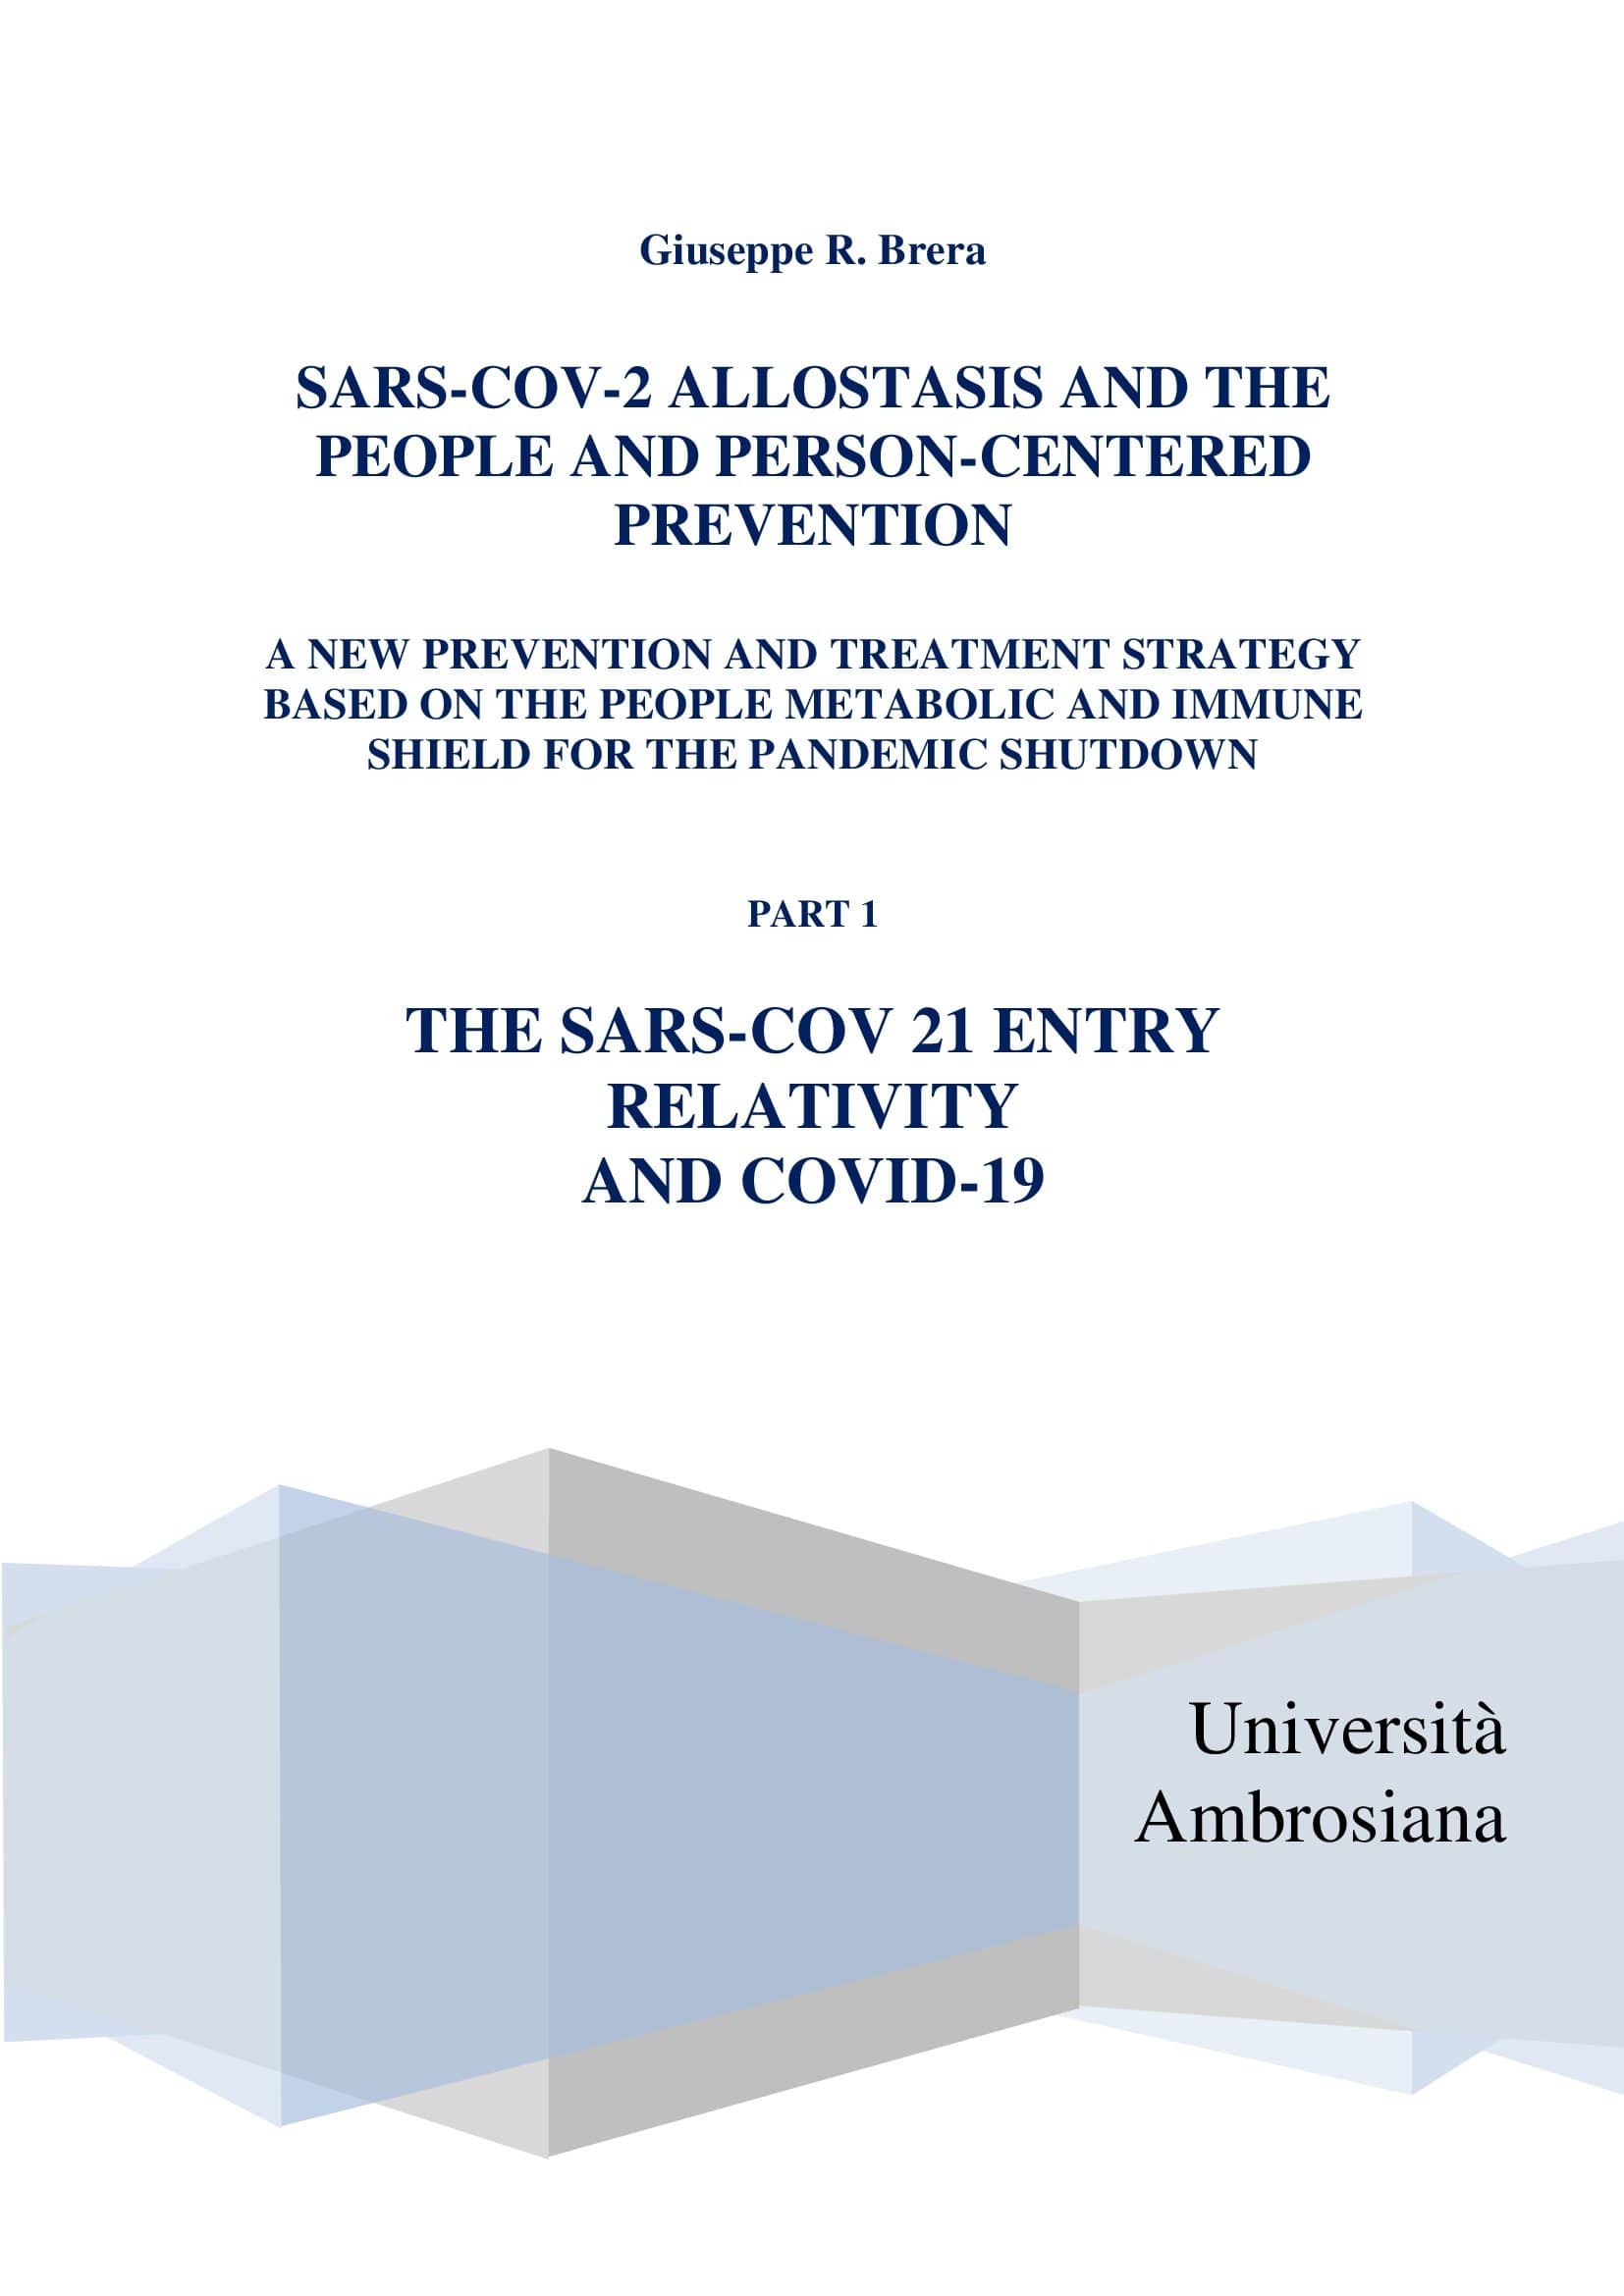 Trattato: L'allostasi del SARS-COV 2 - Parte I° .l'entrata del virus e la relatività dell'infezione